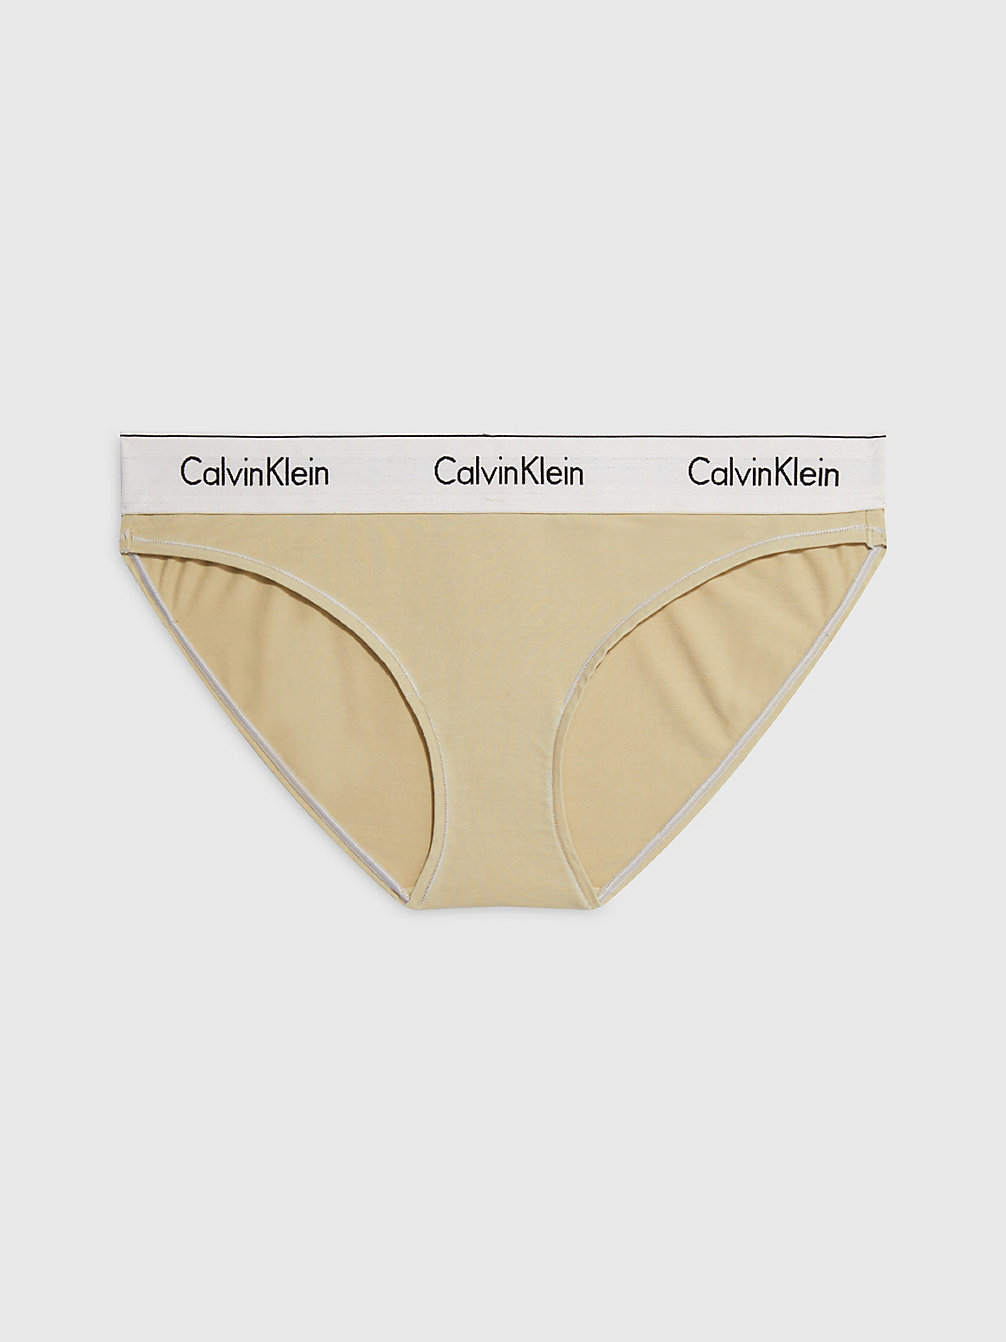 SHELL > Figi - Modern Cotton > undefined Kobiety - Calvin Klein